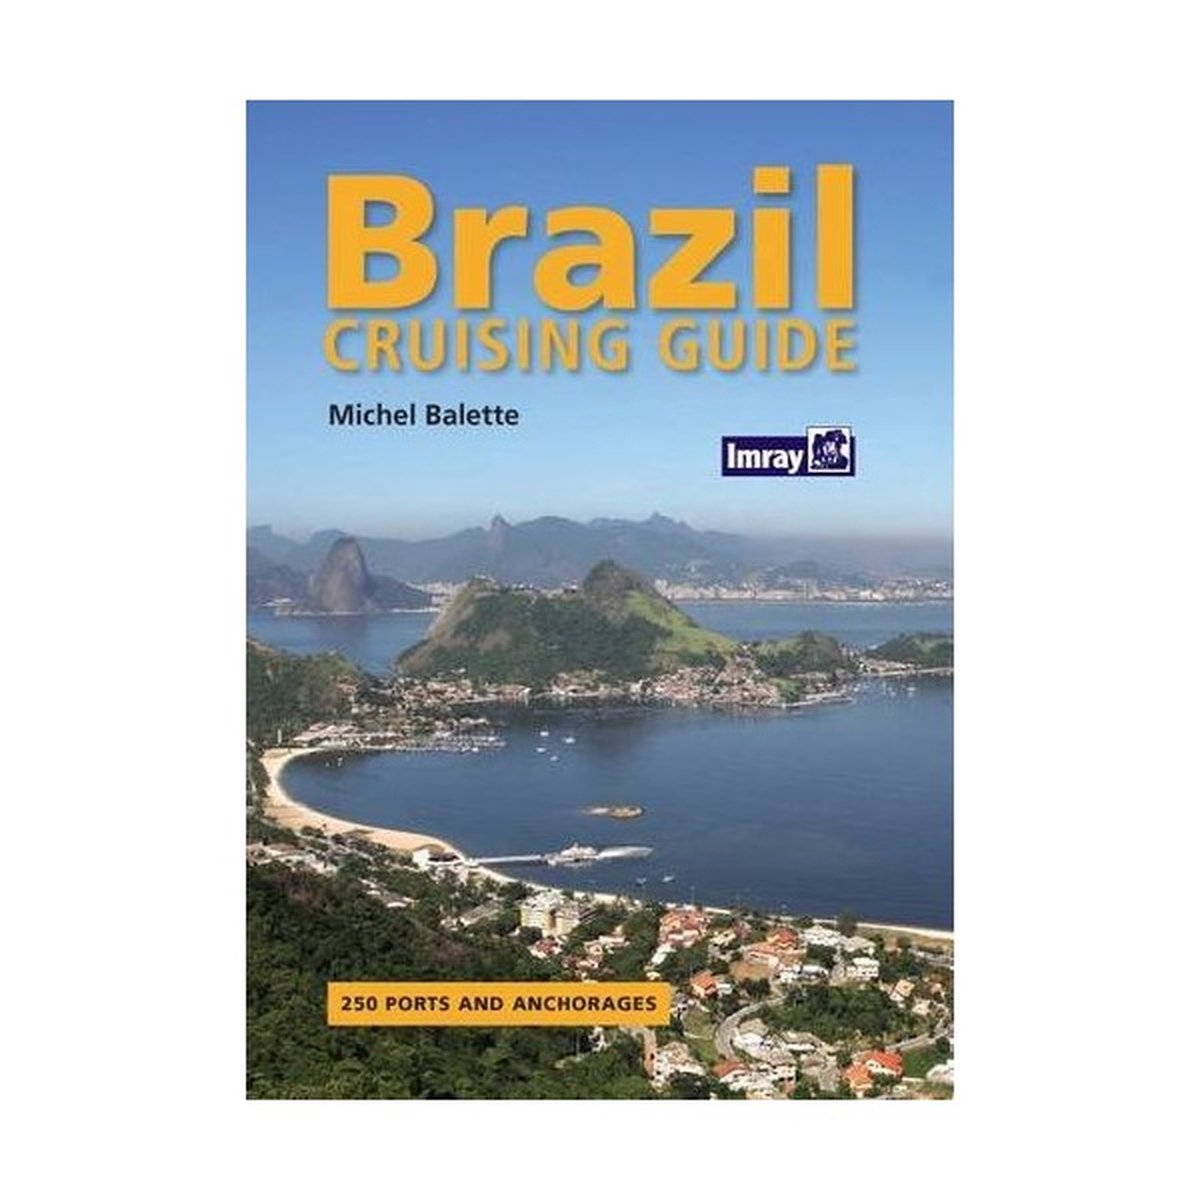 Brazil Cruising Guide - Michael Balette